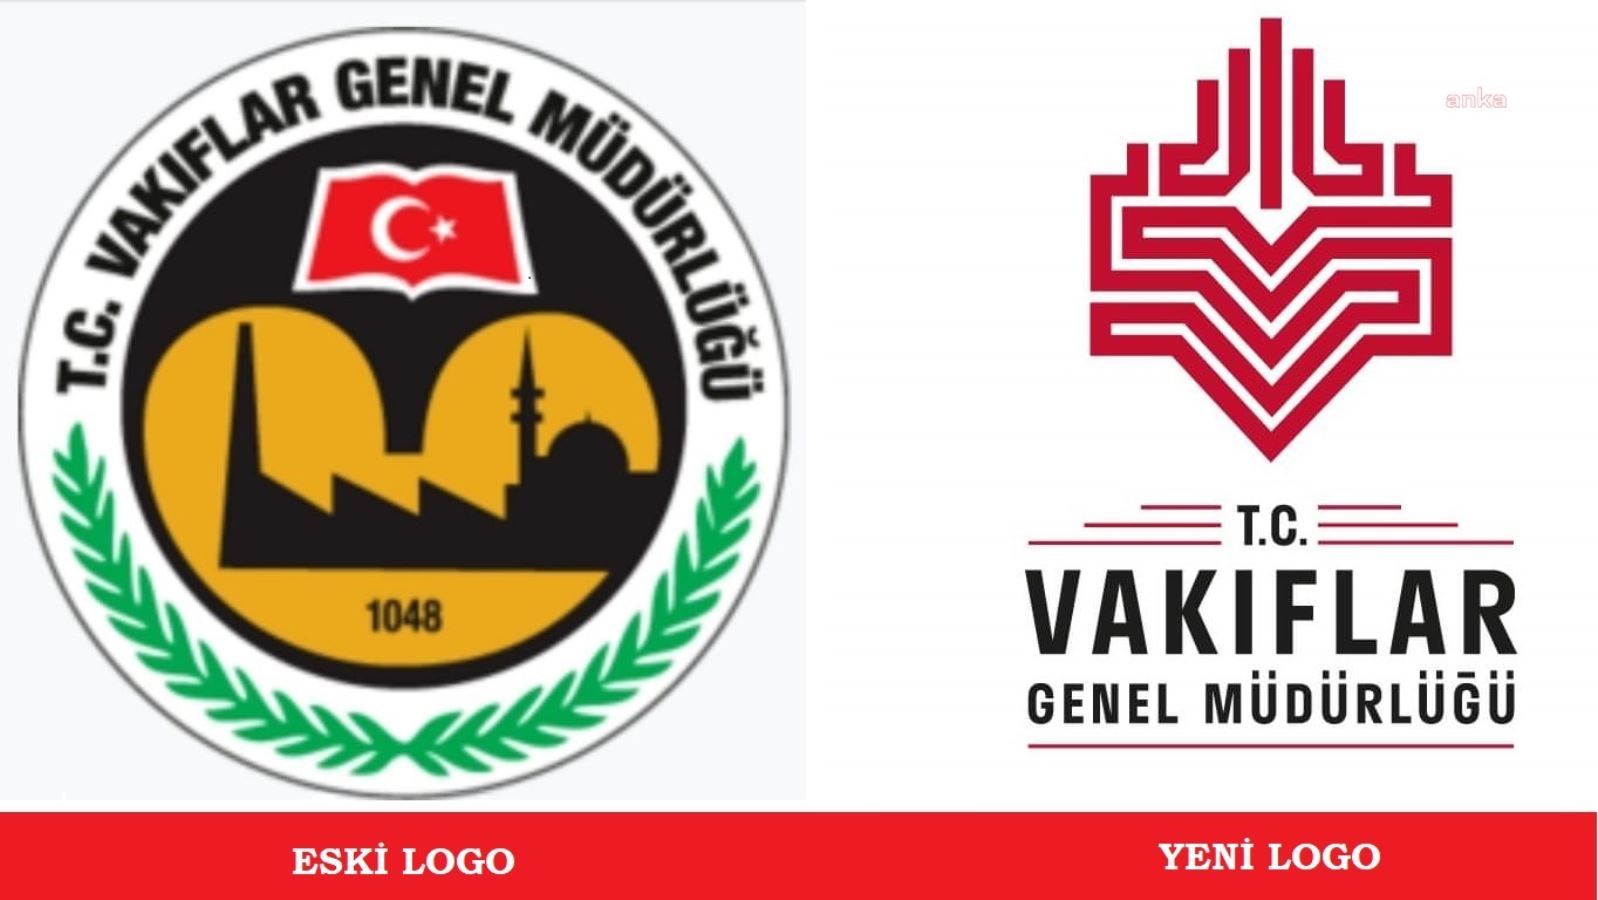 Vakıflar Genel Müdürlüğü'nün logosundan Türk bayrağını çıkardılar